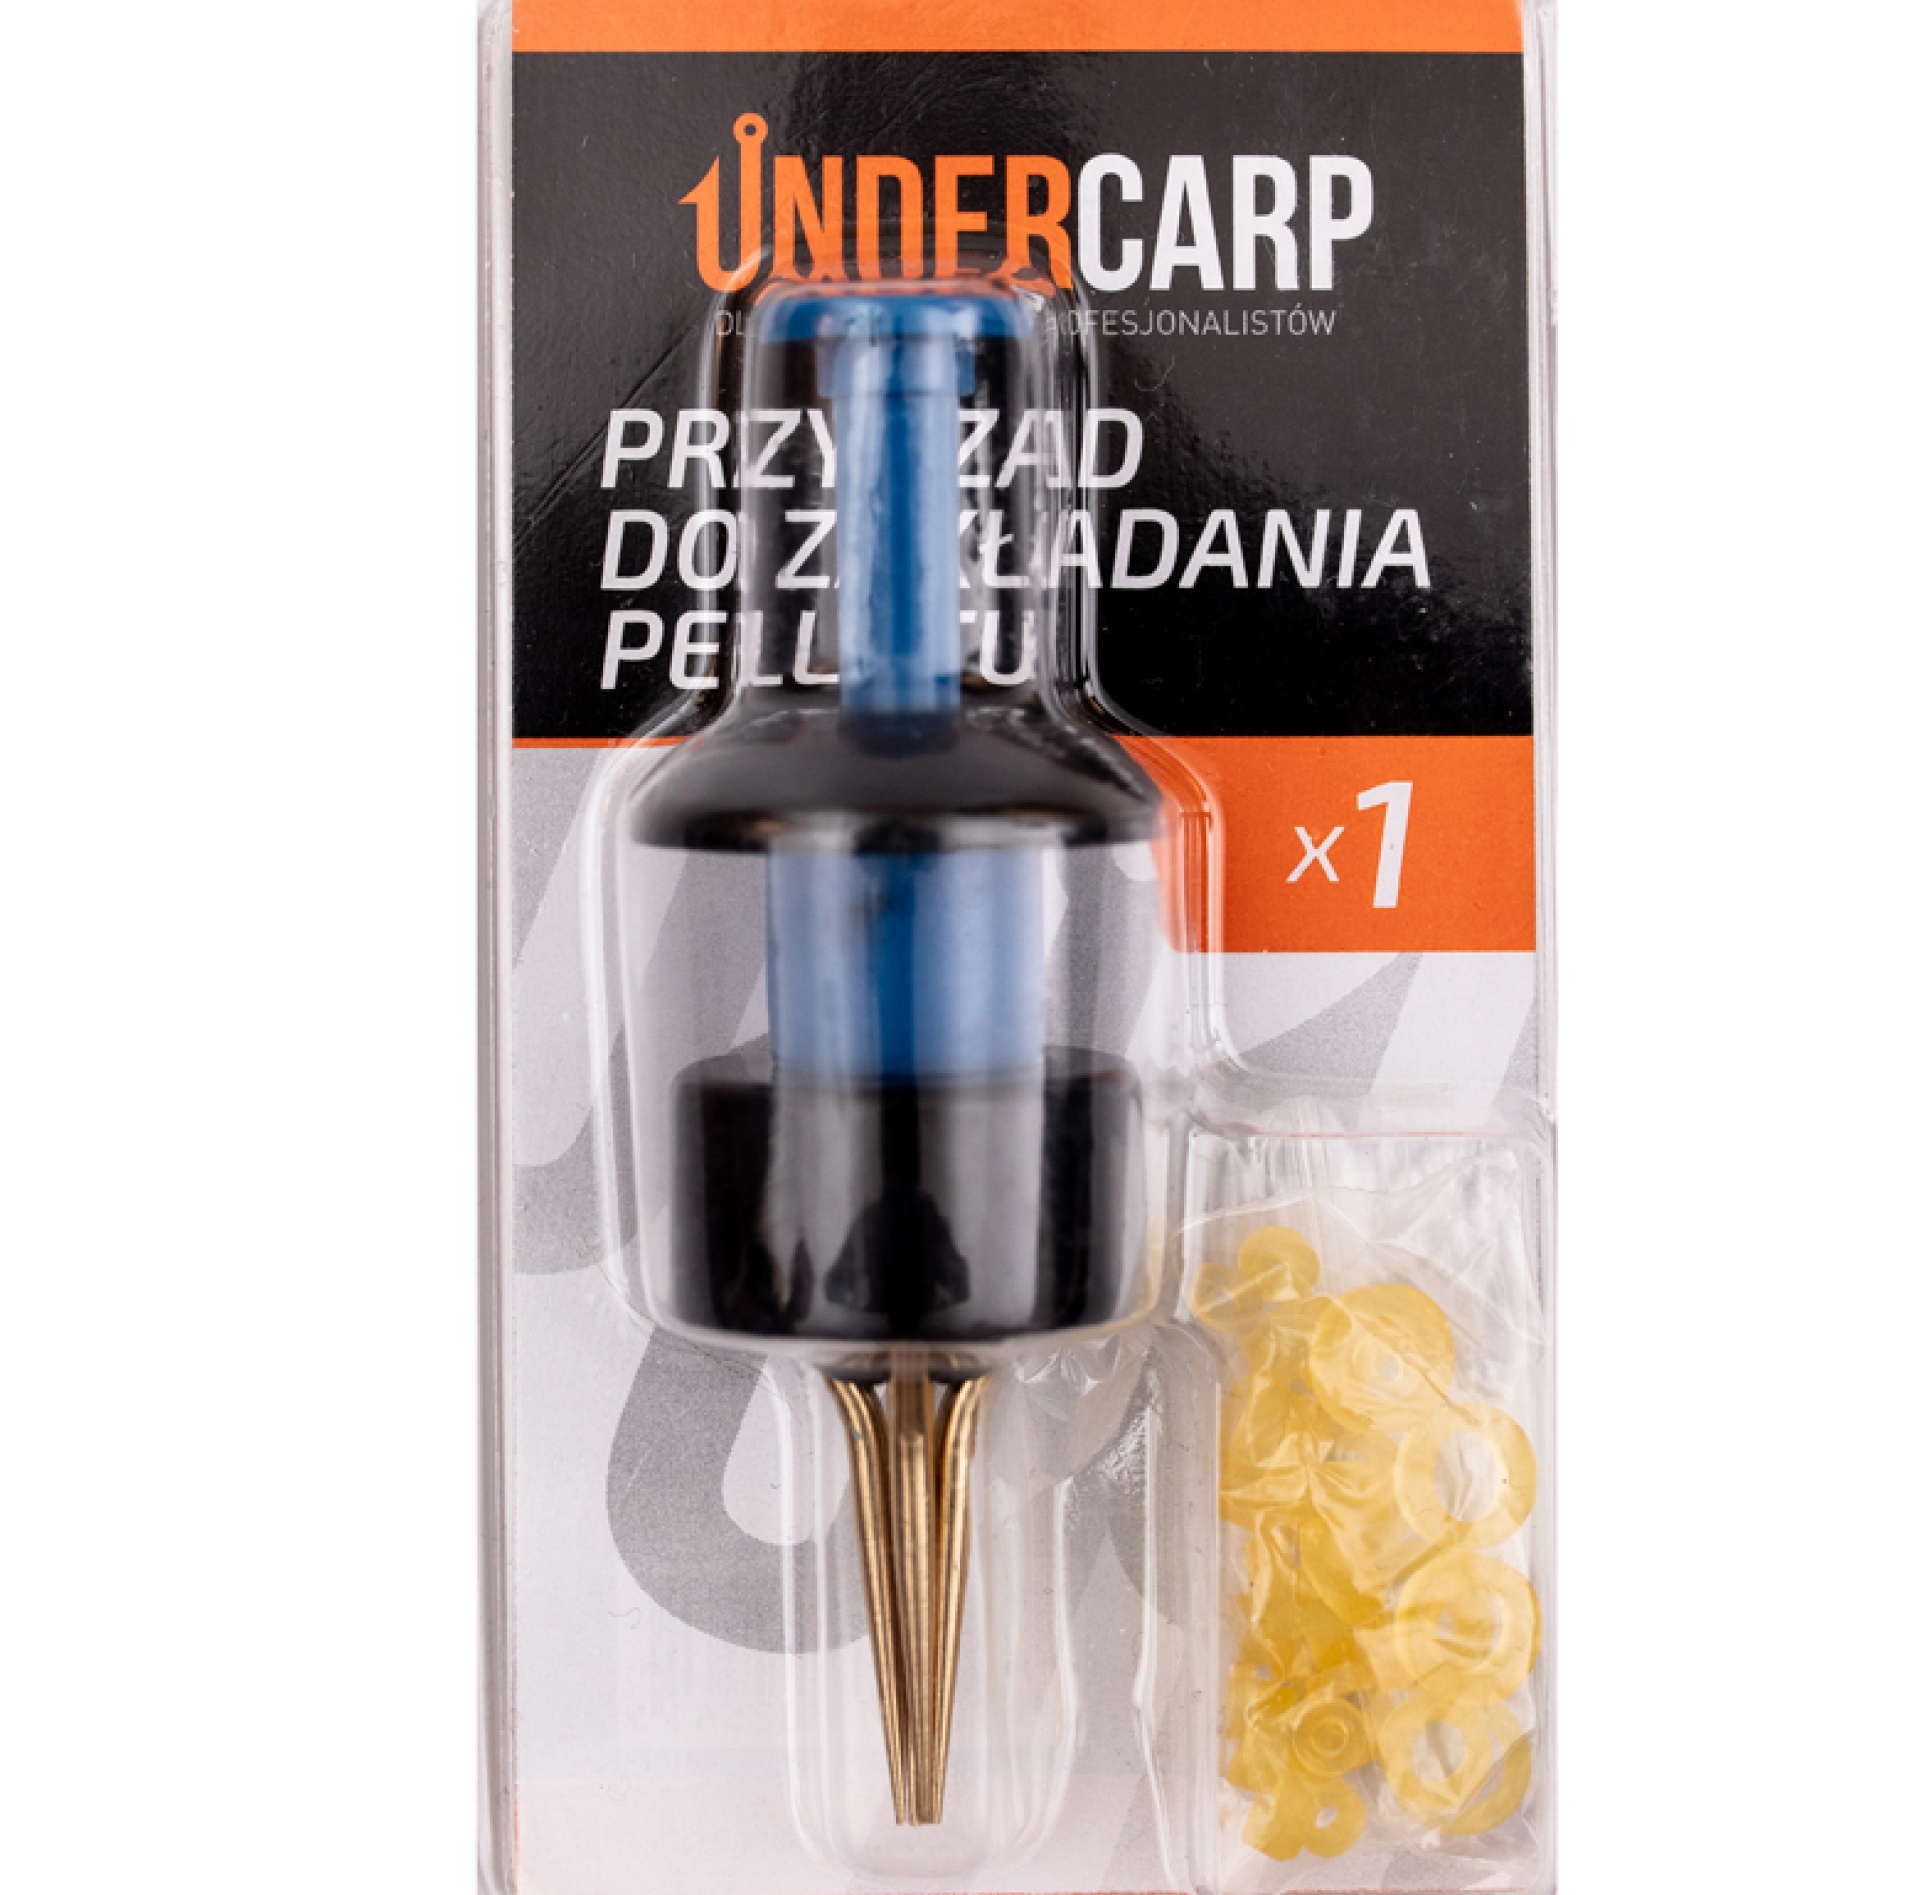 UnderCarp - Pelletų uždedimo įrankis